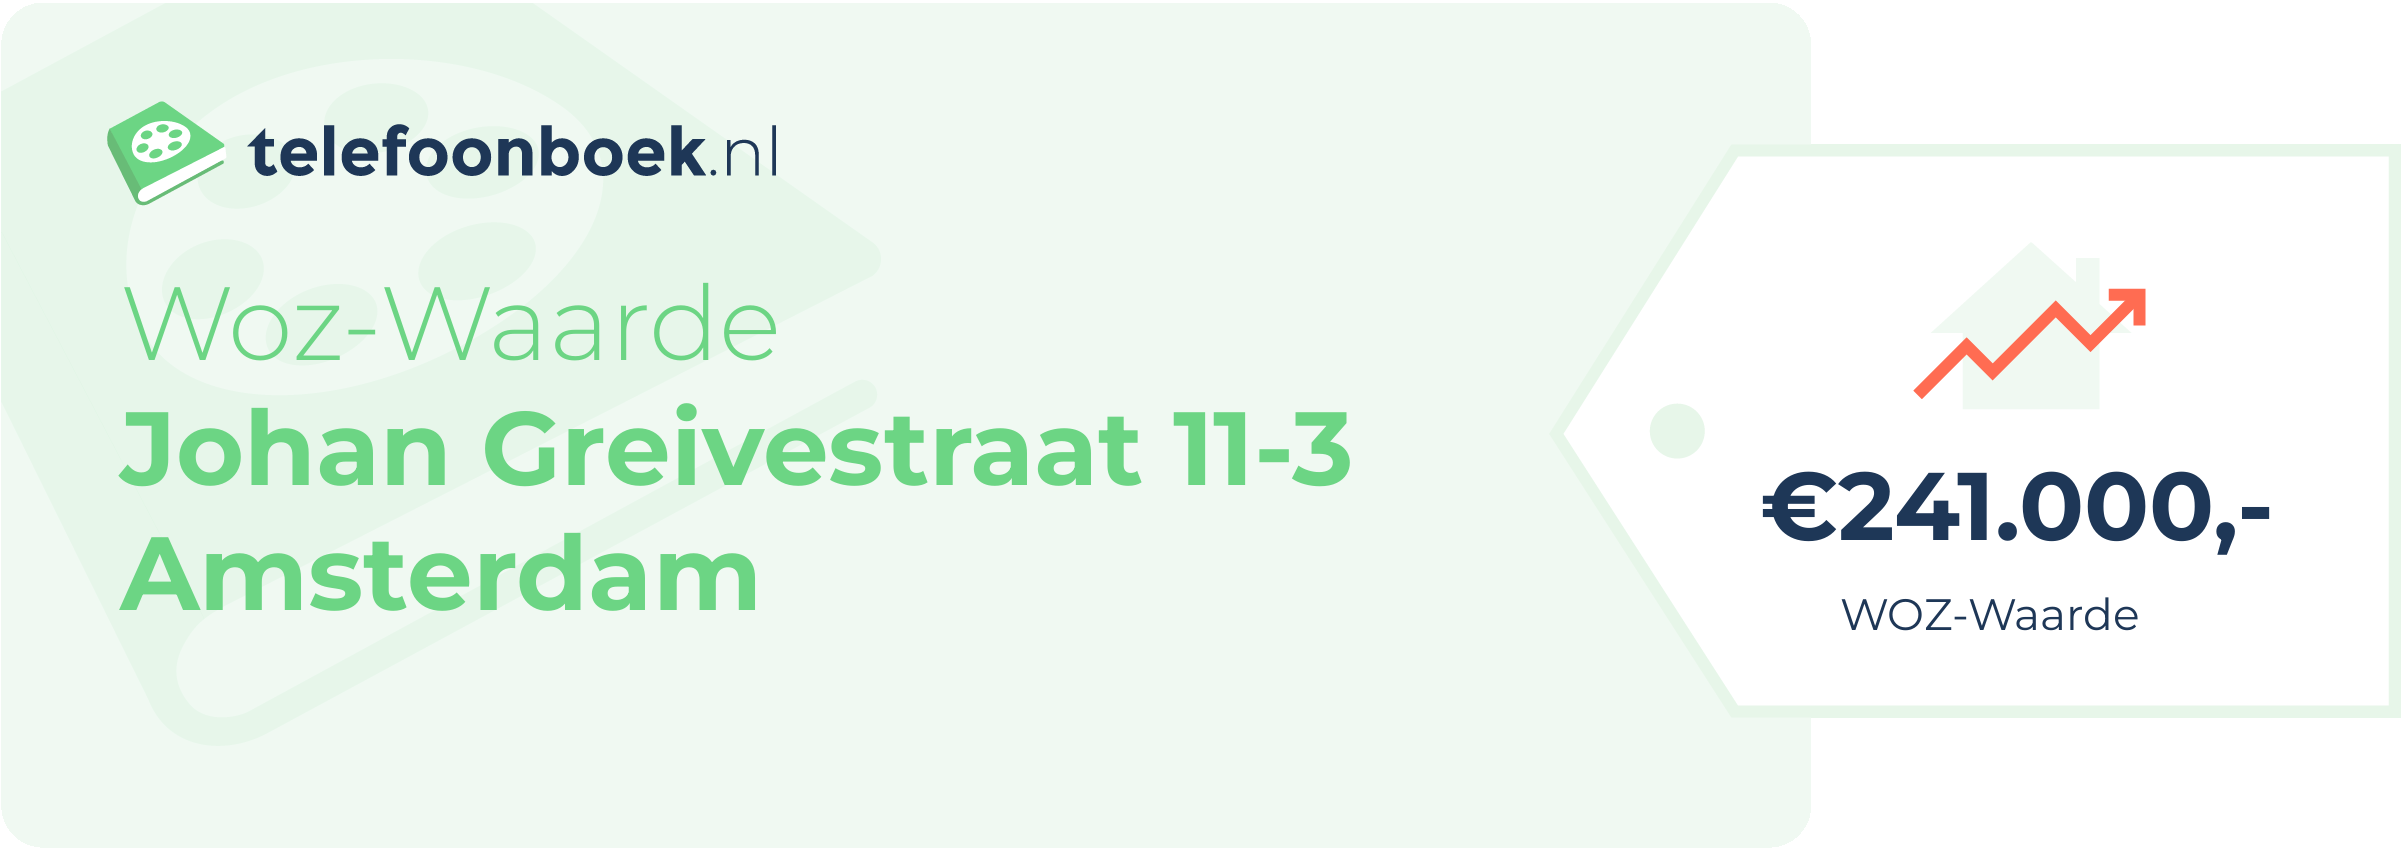 WOZ-waarde Johan Greivestraat 11-3 Amsterdam